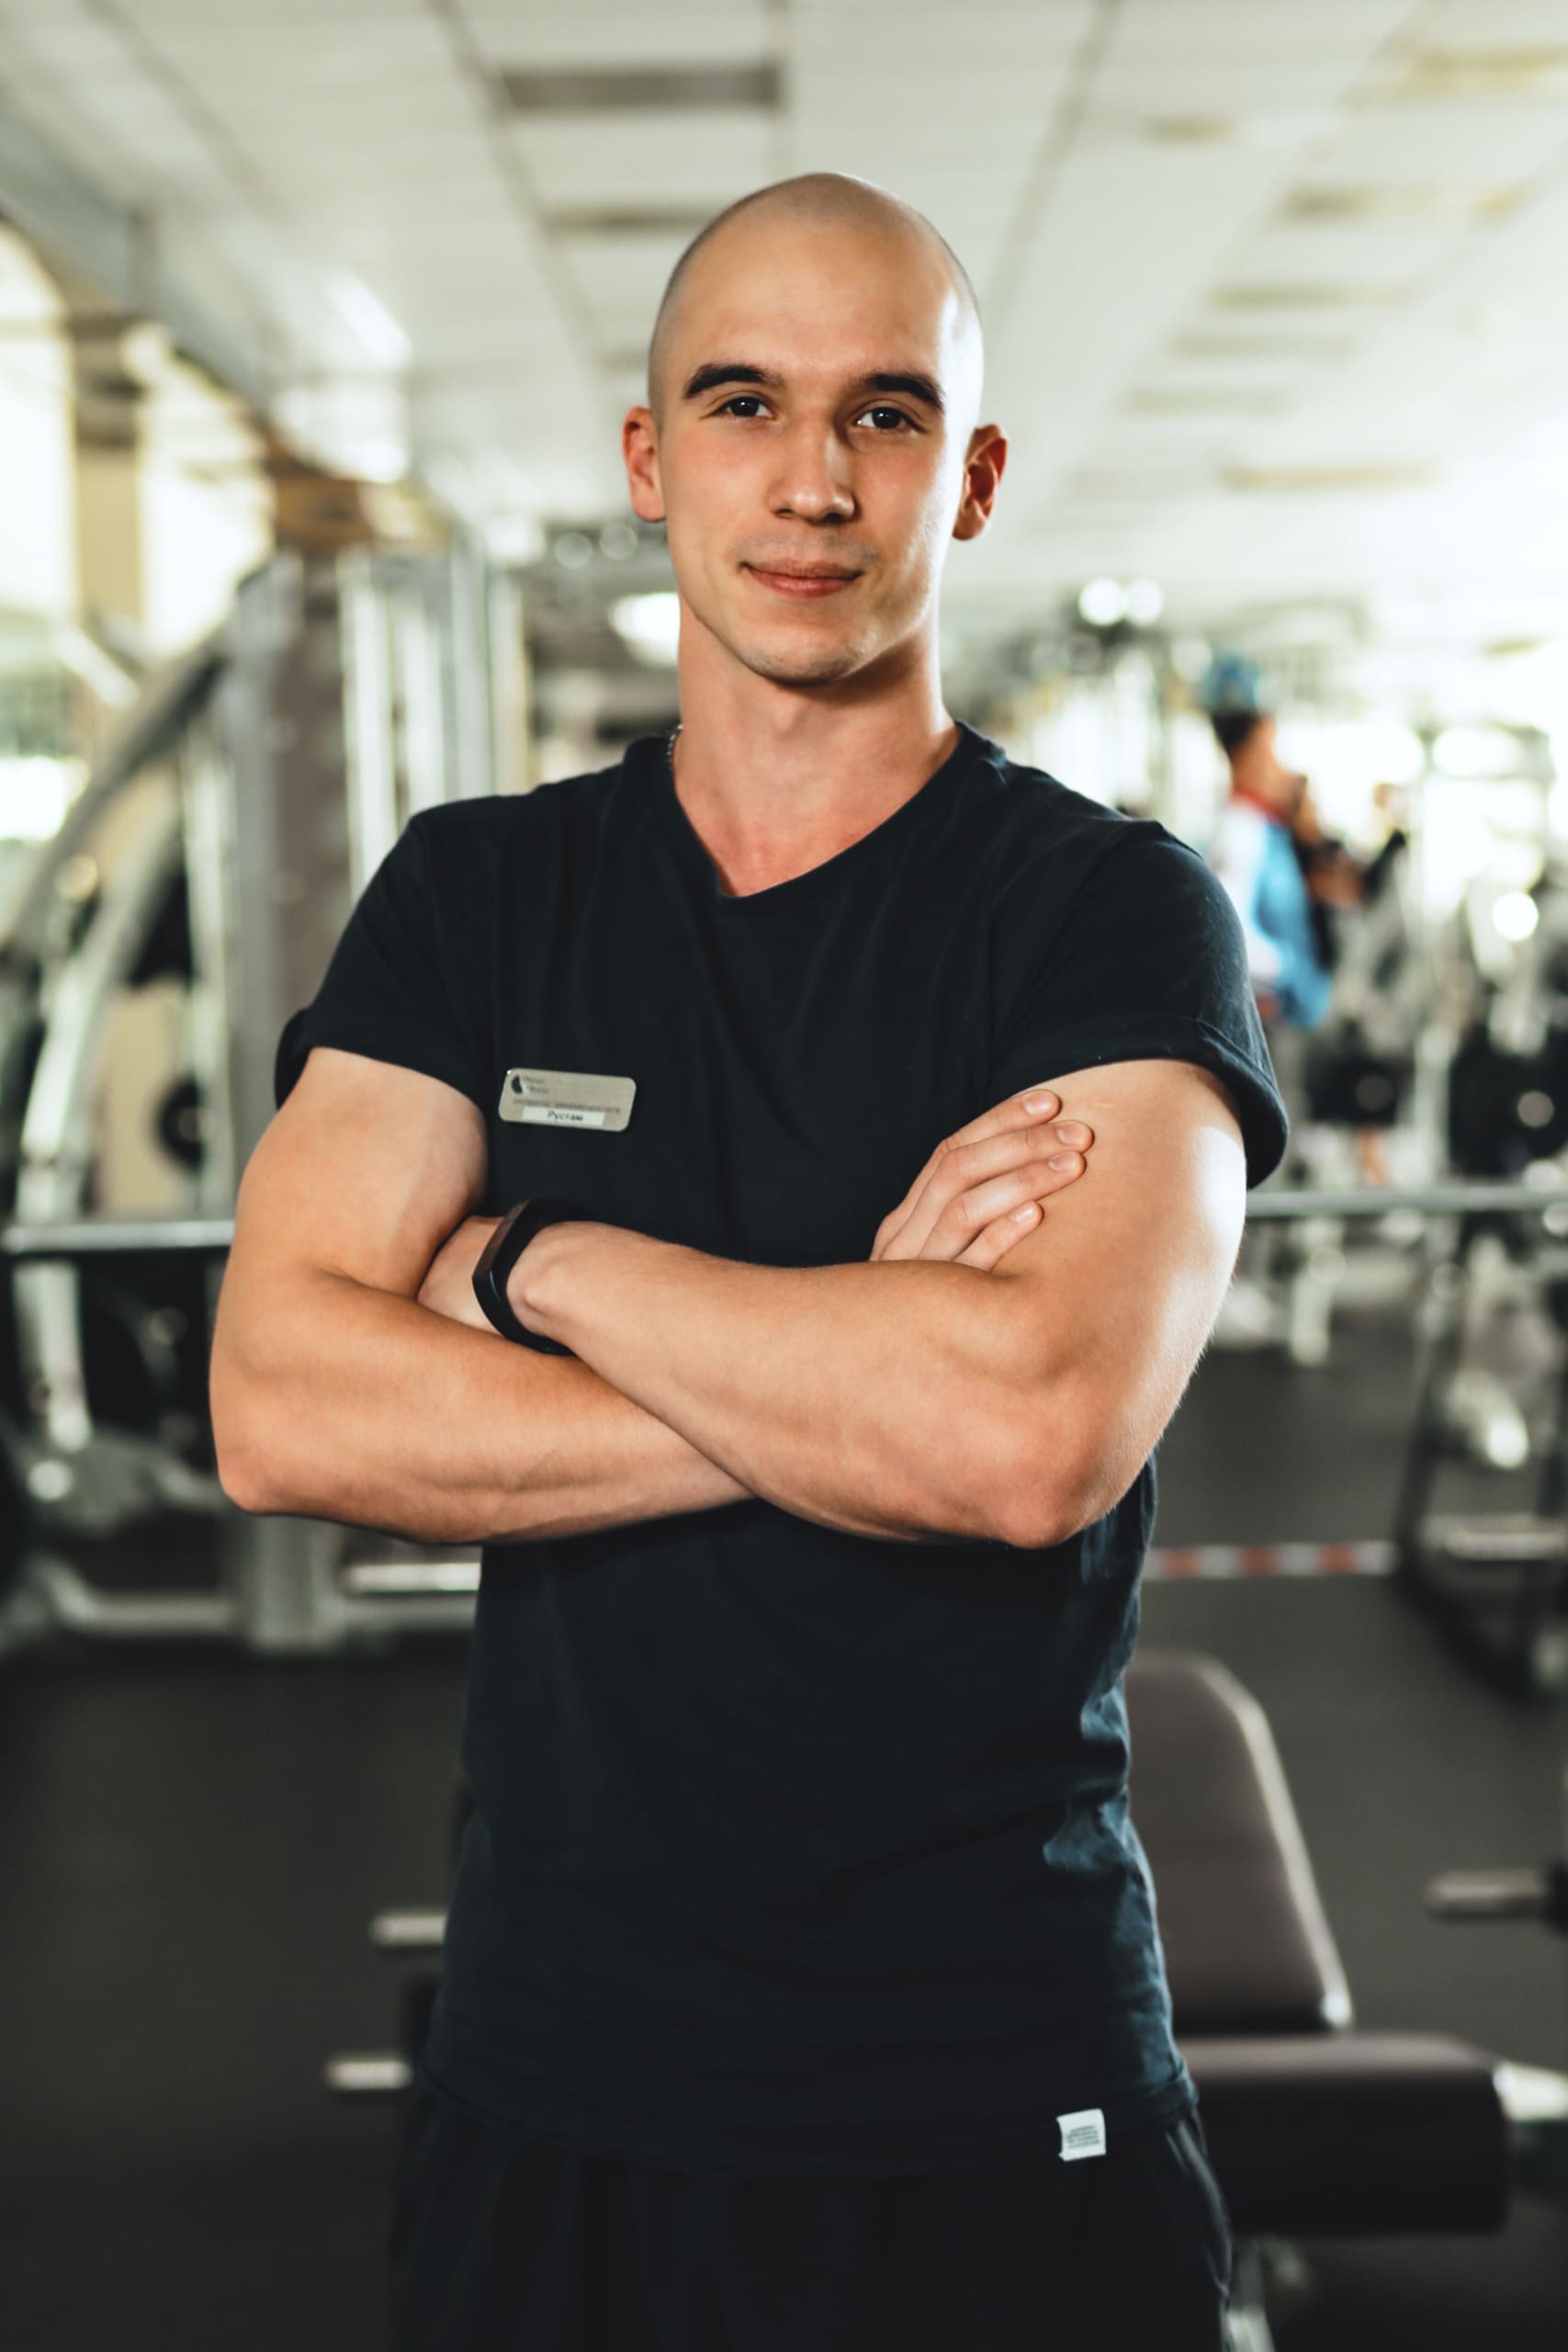 Гибаев Рустам, инструктор тренажерного зала фитнес-клуба Orange Fitness в Набережных Челнах